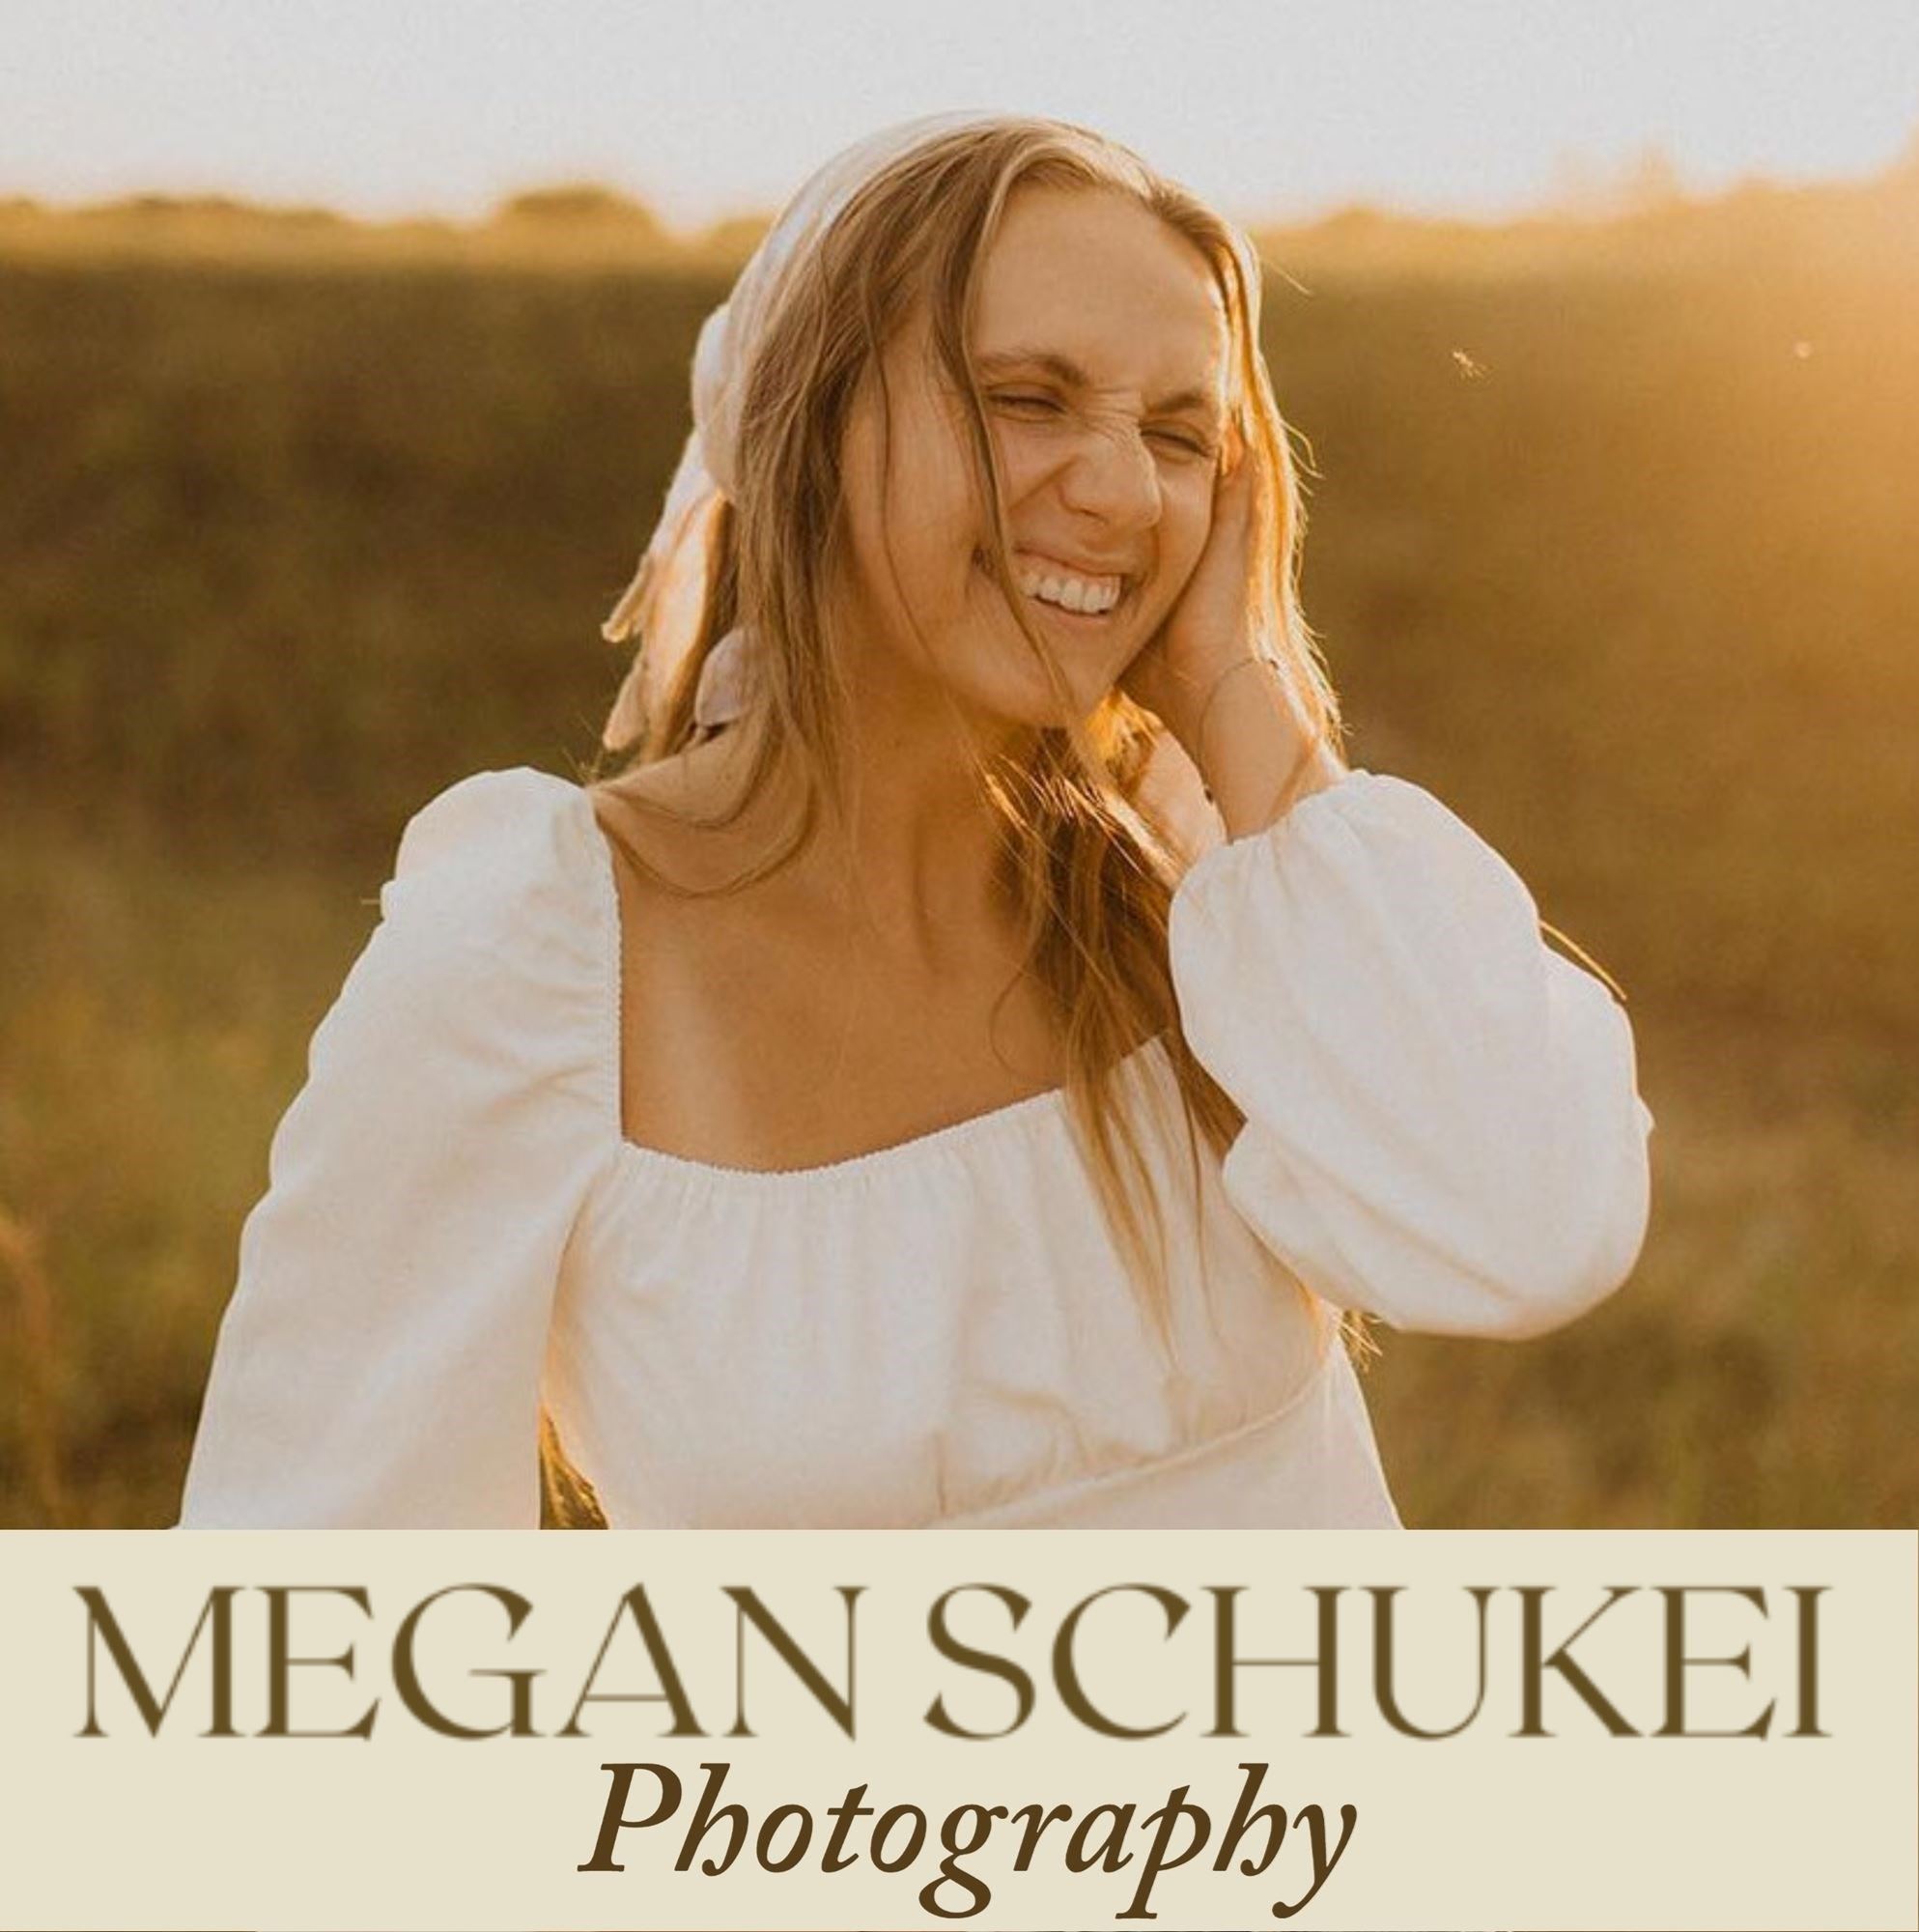 Megan Schukei Photography